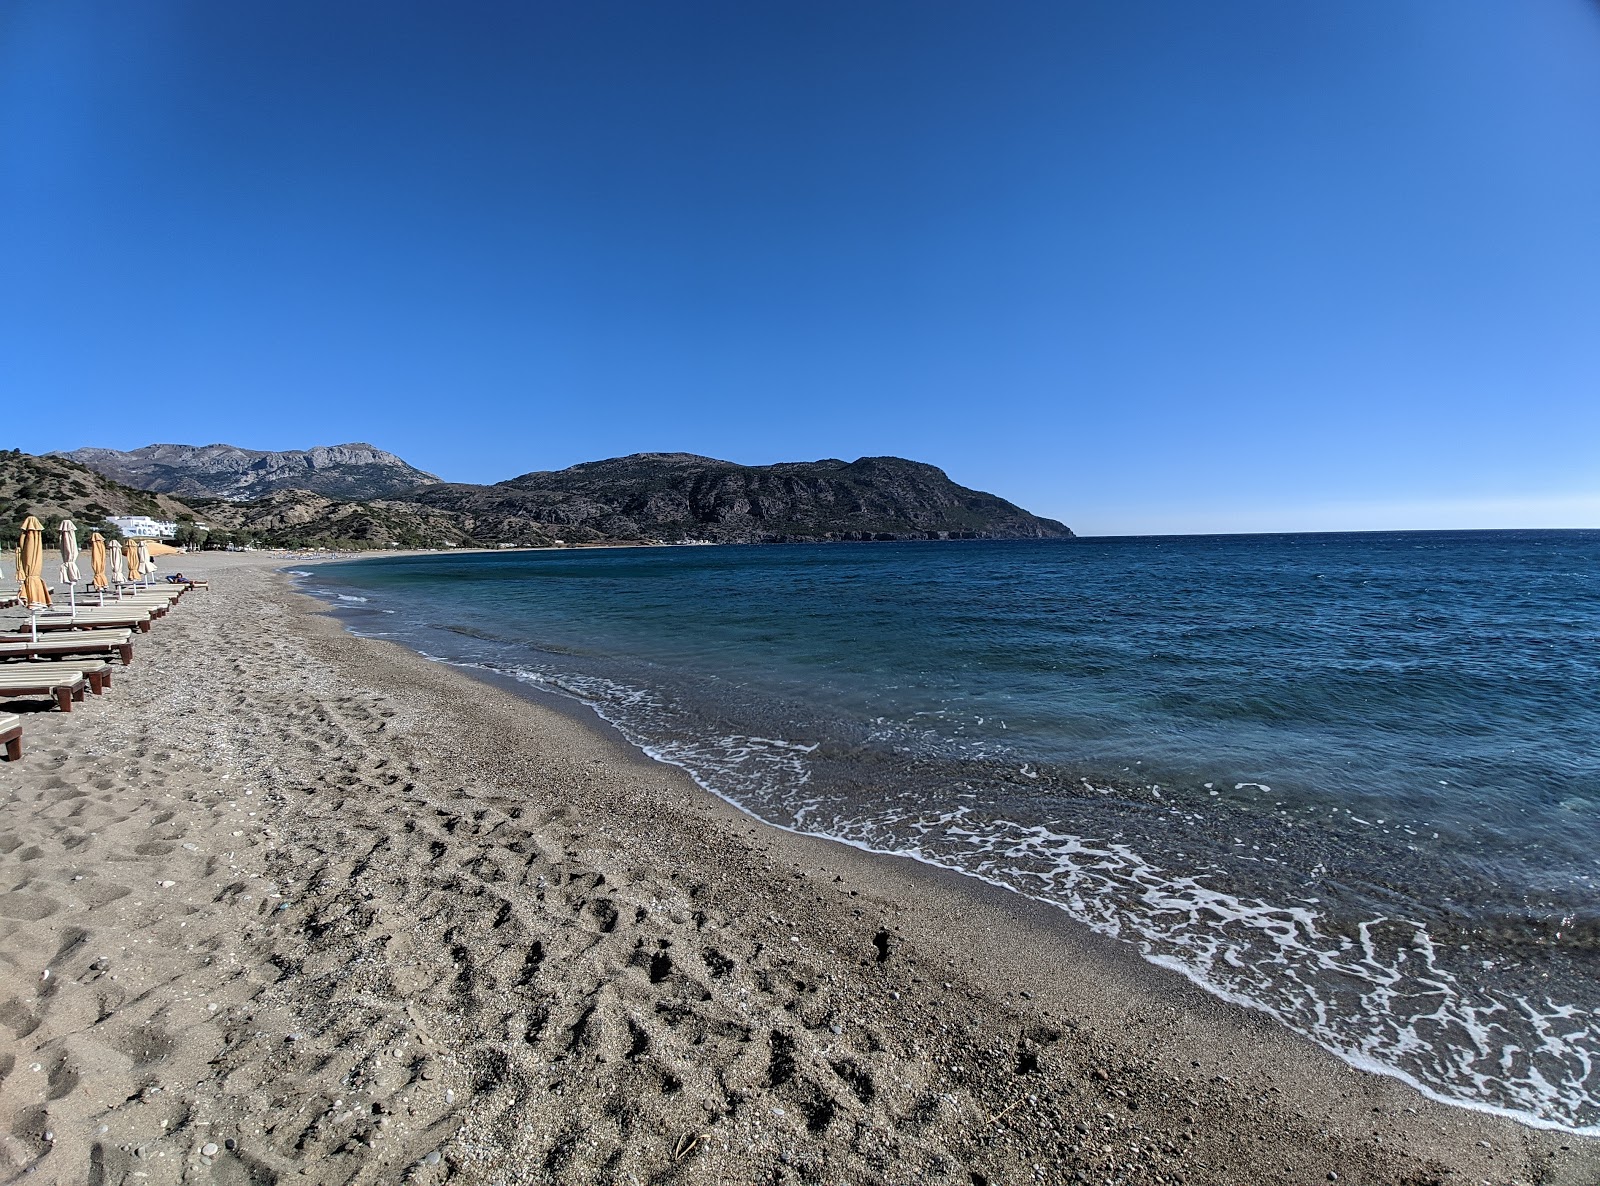 Photo de Limniatis beach - endroit populaire parmi les connaisseurs de la détente